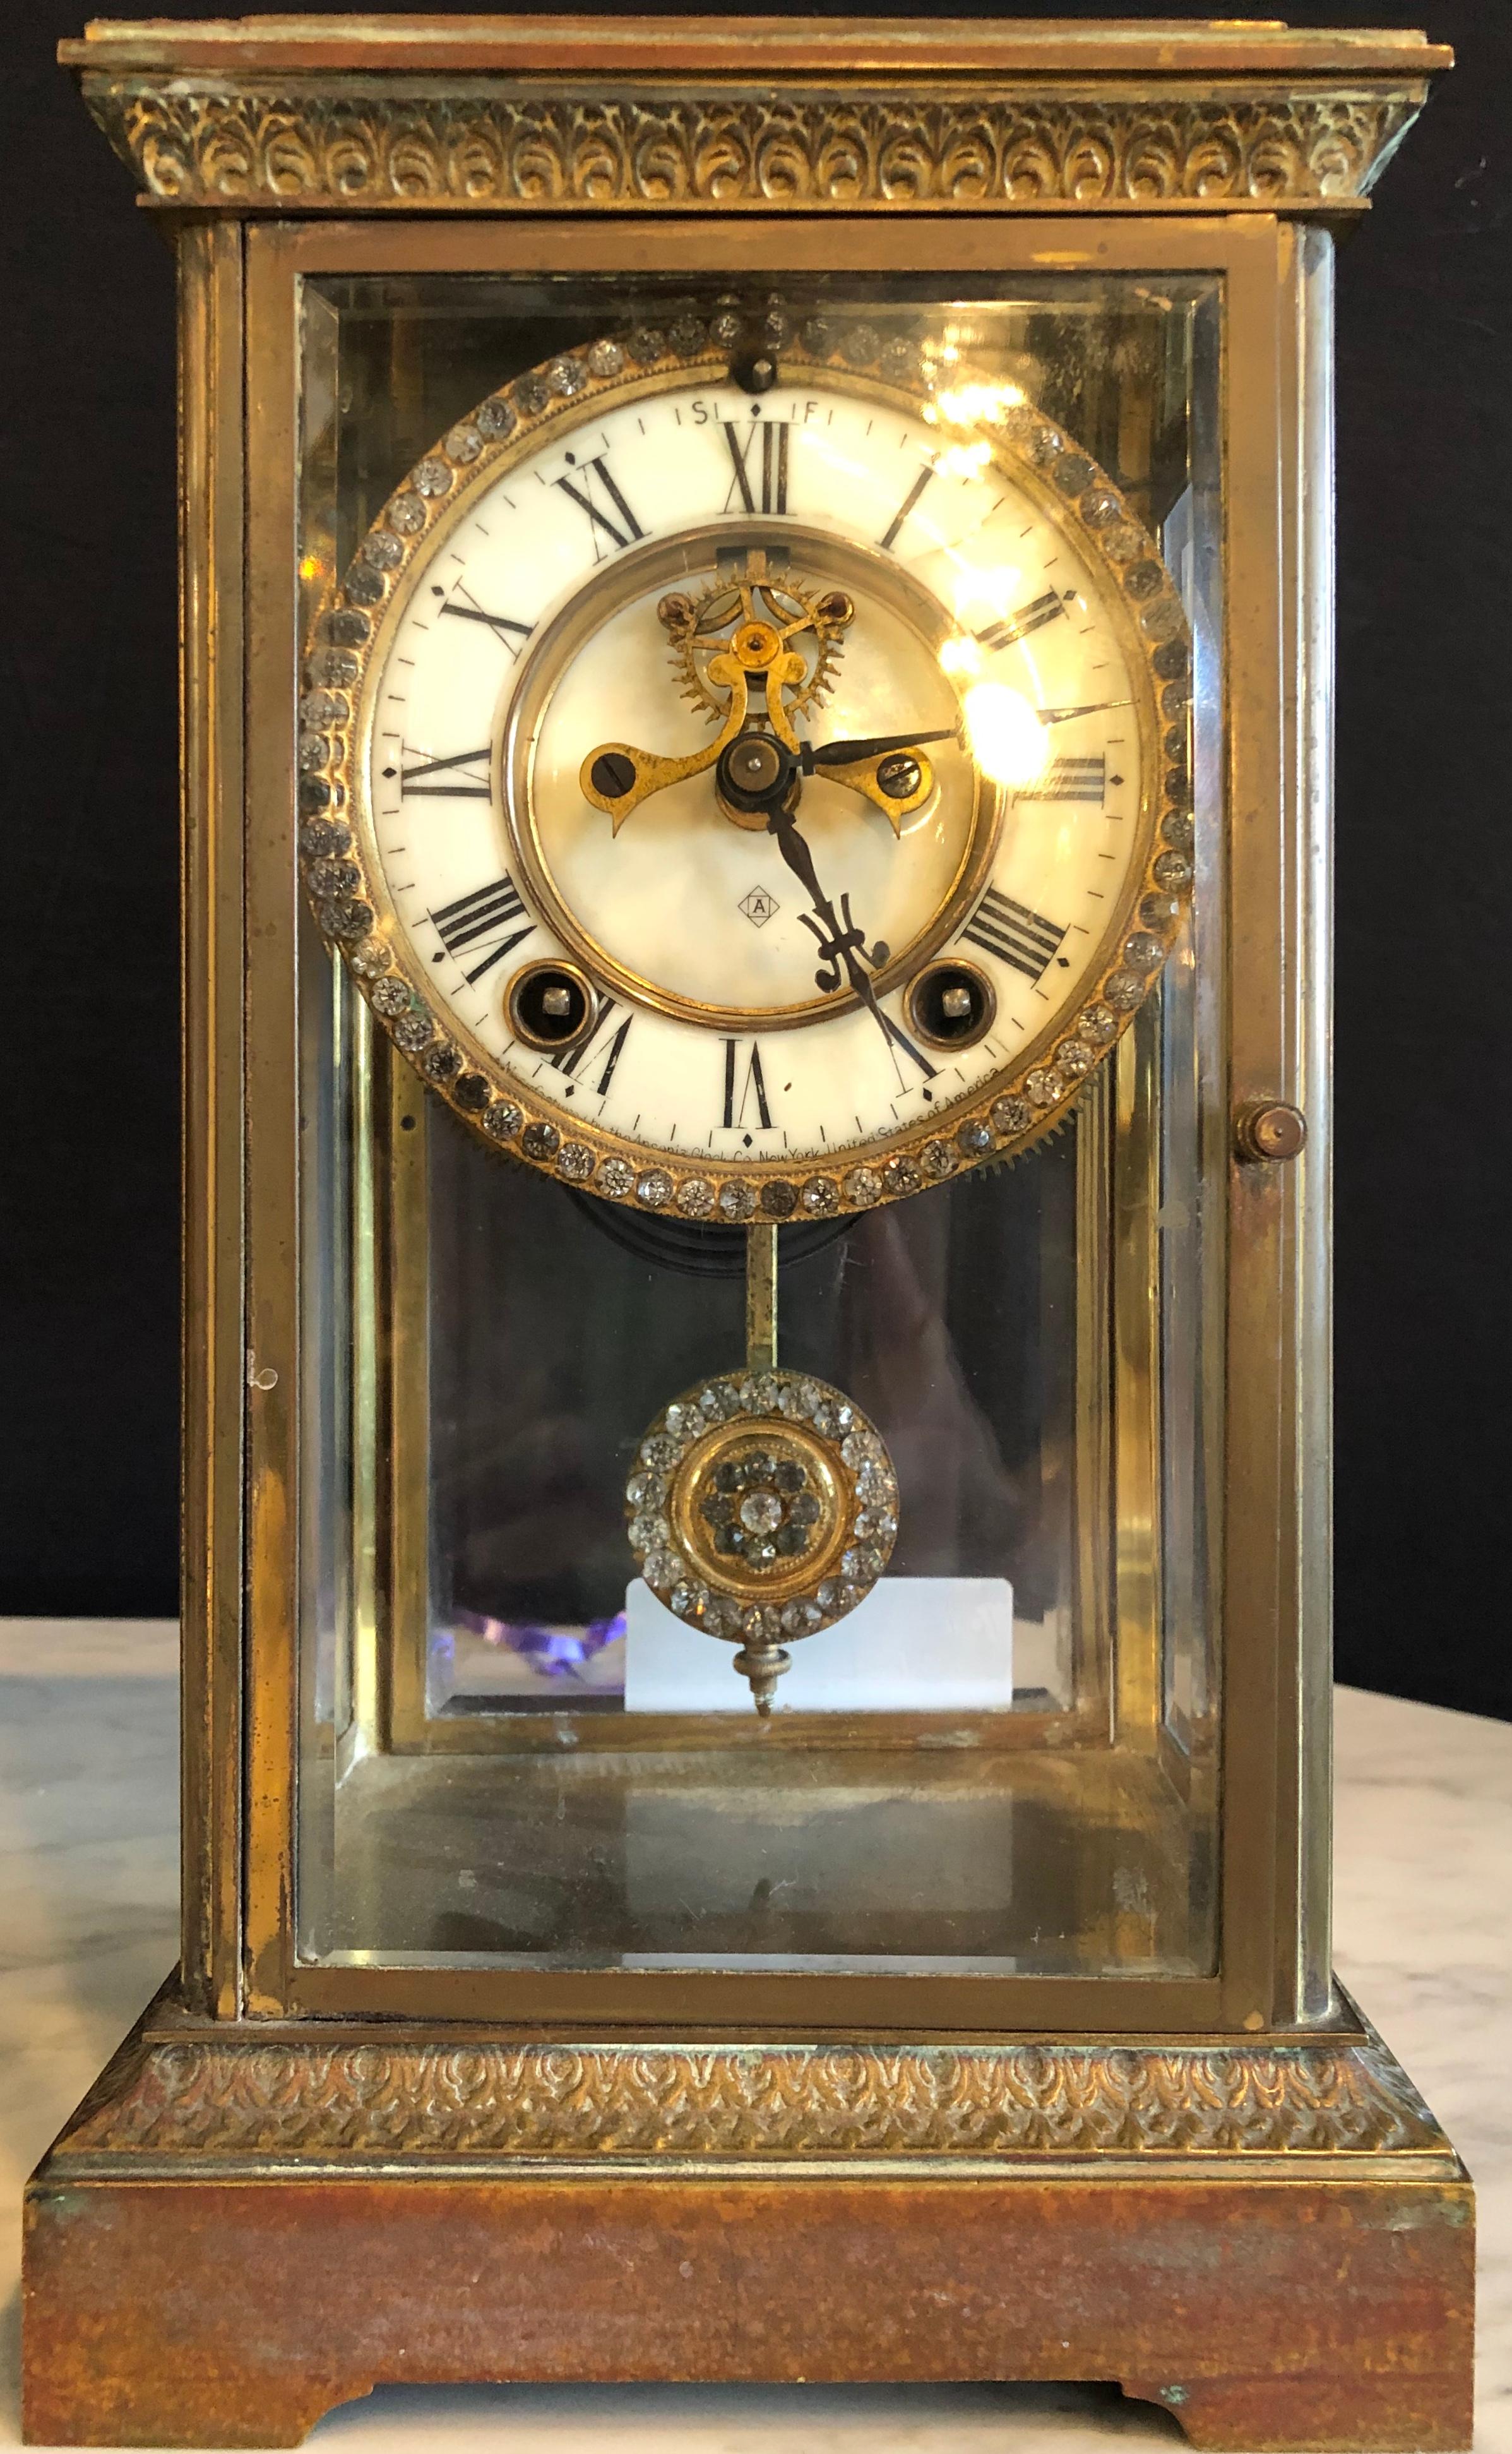 Kristallzifferblatt und Pendeluhr der Firma Ansonia Clock of New York. Gehäuse aus Bronze in einer Einfassung aus abgeschrägtem Glas.